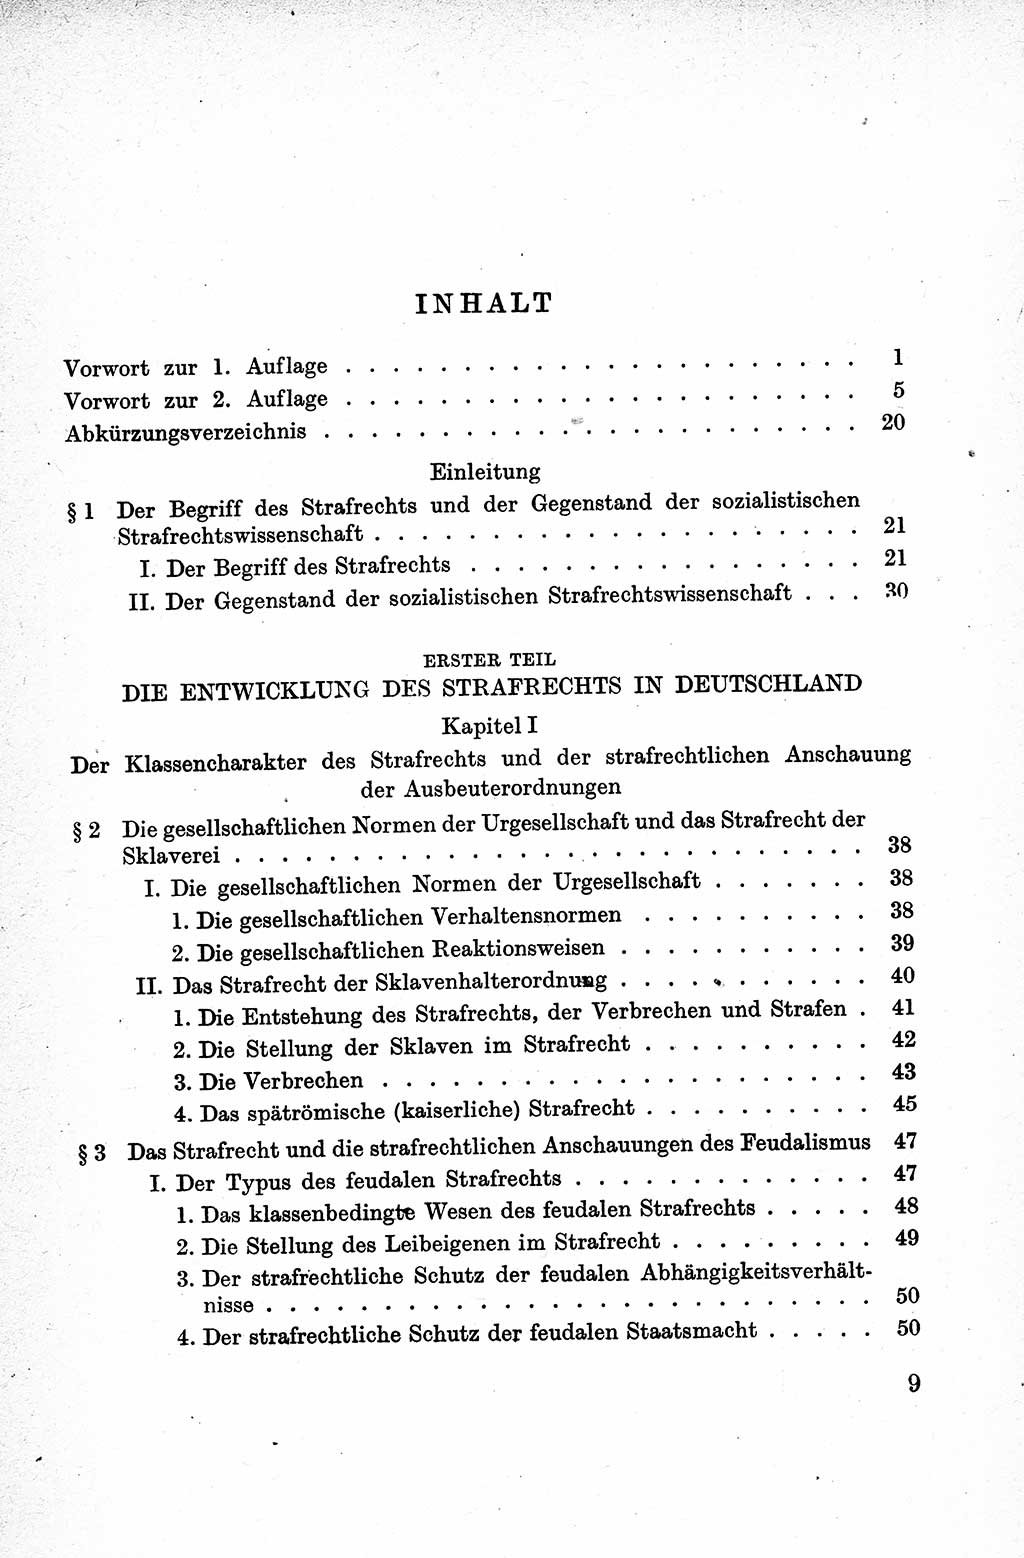 Lehrbuch des Strafrechts der Deutschen Demokratischen Republik (DDR), Allgemeiner Teil 1959, Seite 9 (Lb. Strafr. DDR AT 1959, S. 9)